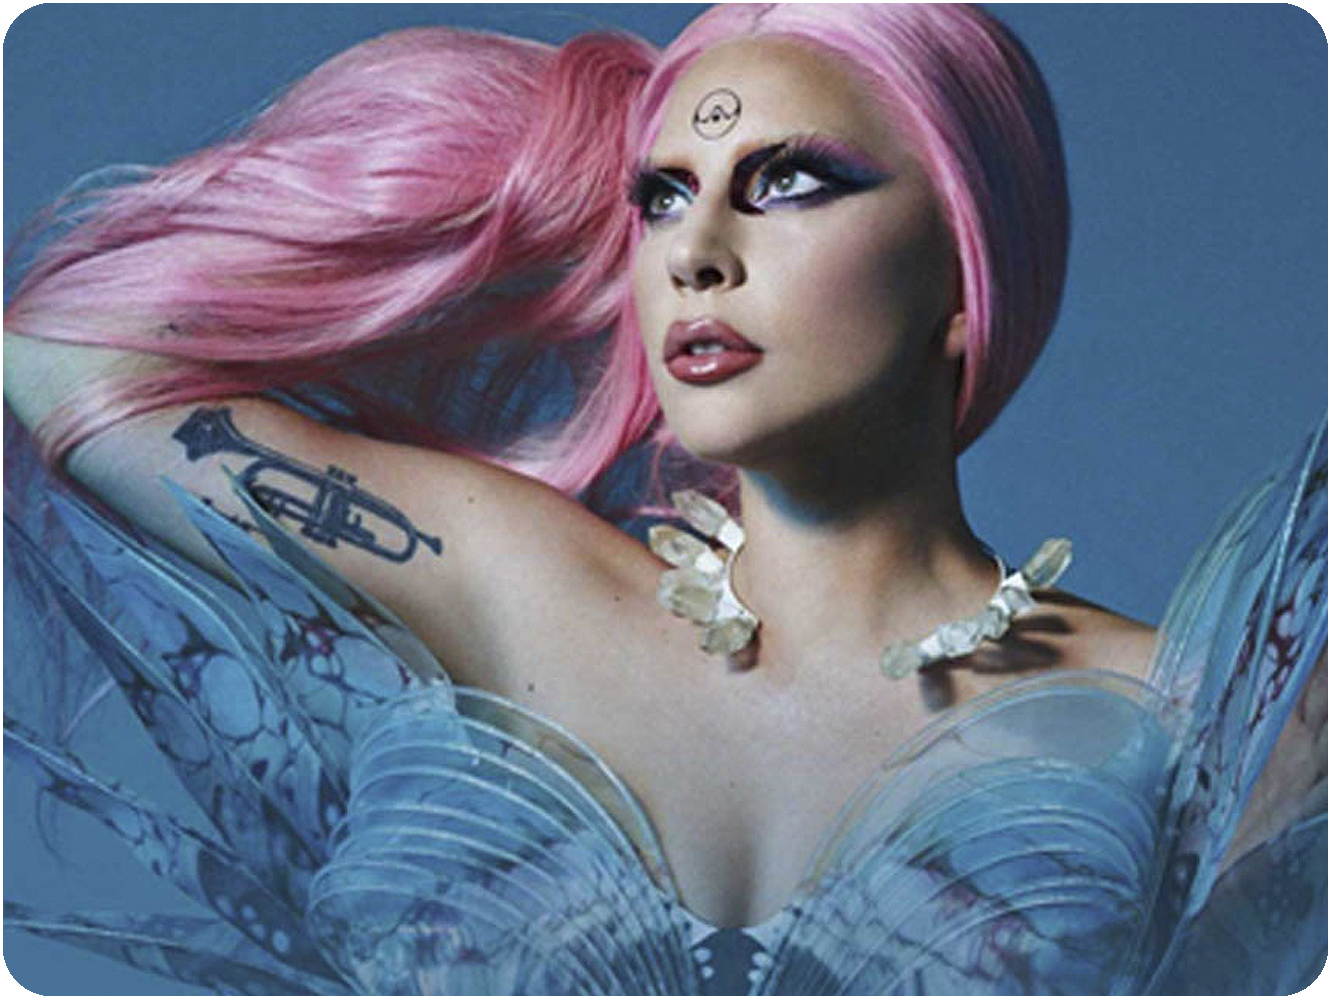  Doble by-pass a ‘Chromatica’, con nuevos vídeos y actuaciones de Lady Gaga ya previstas